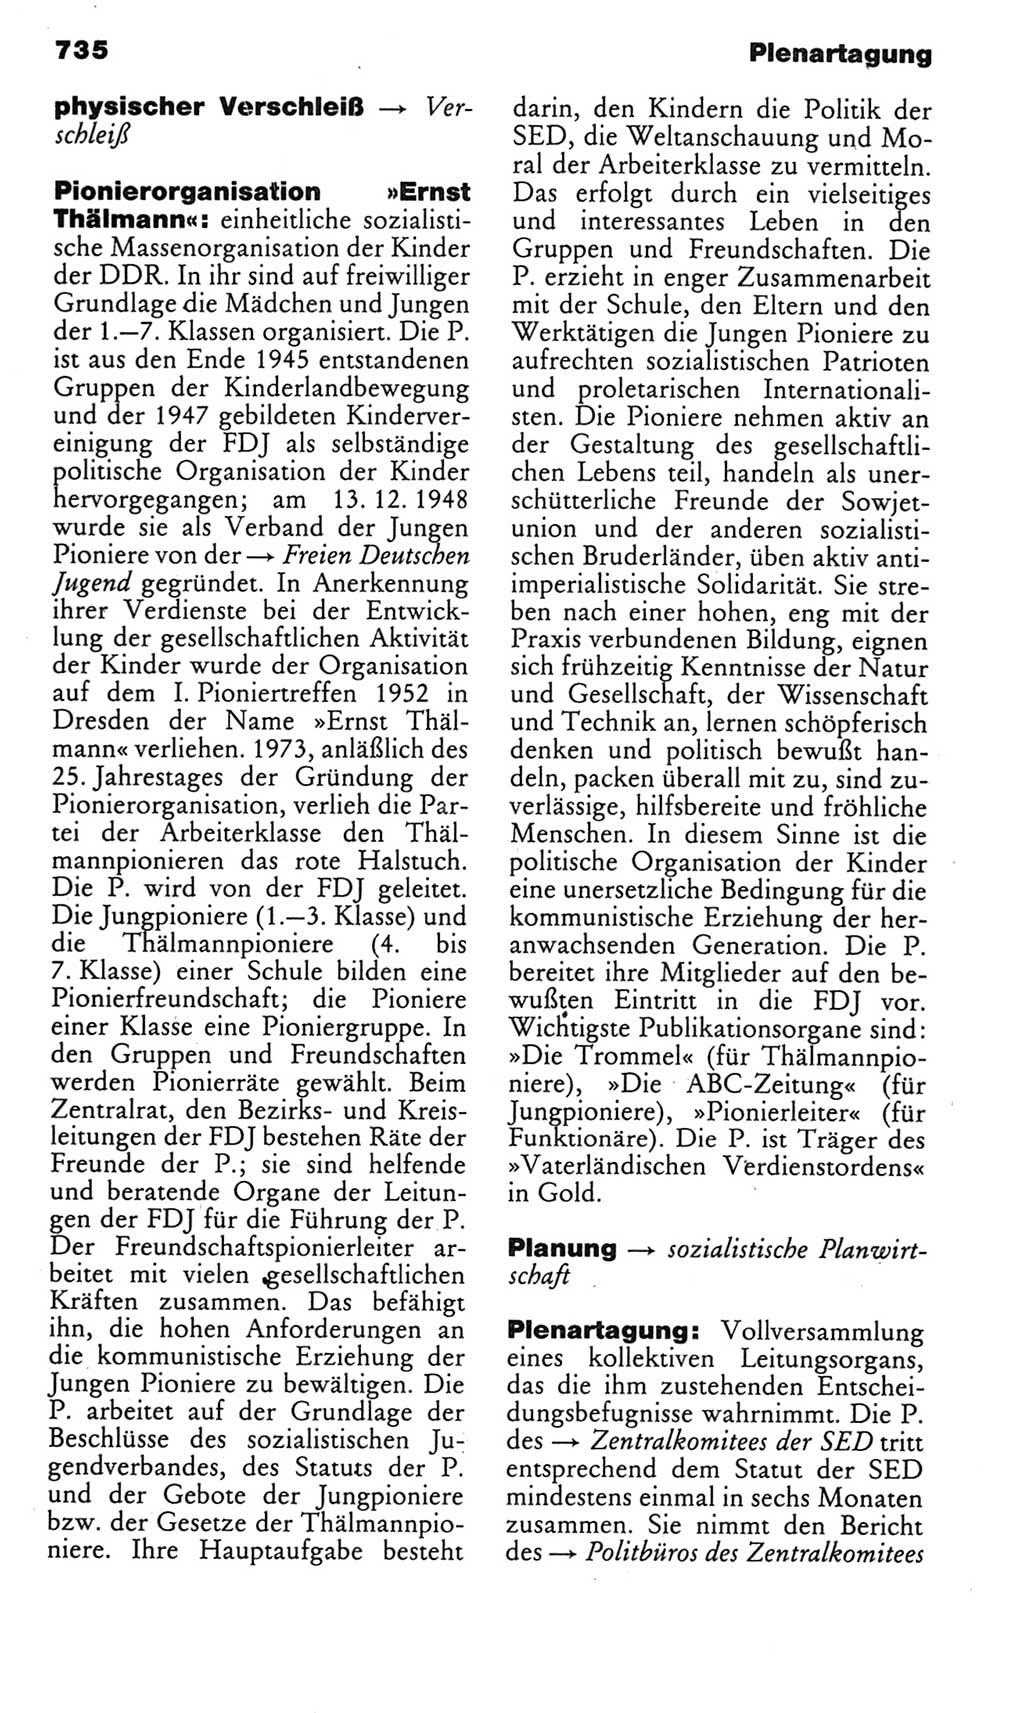 Kleines politisches Wörterbuch [Deutsche Demokratische Republik (DDR)] 1985, Seite 735 (Kl. pol. Wb. DDR 1985, S. 735)